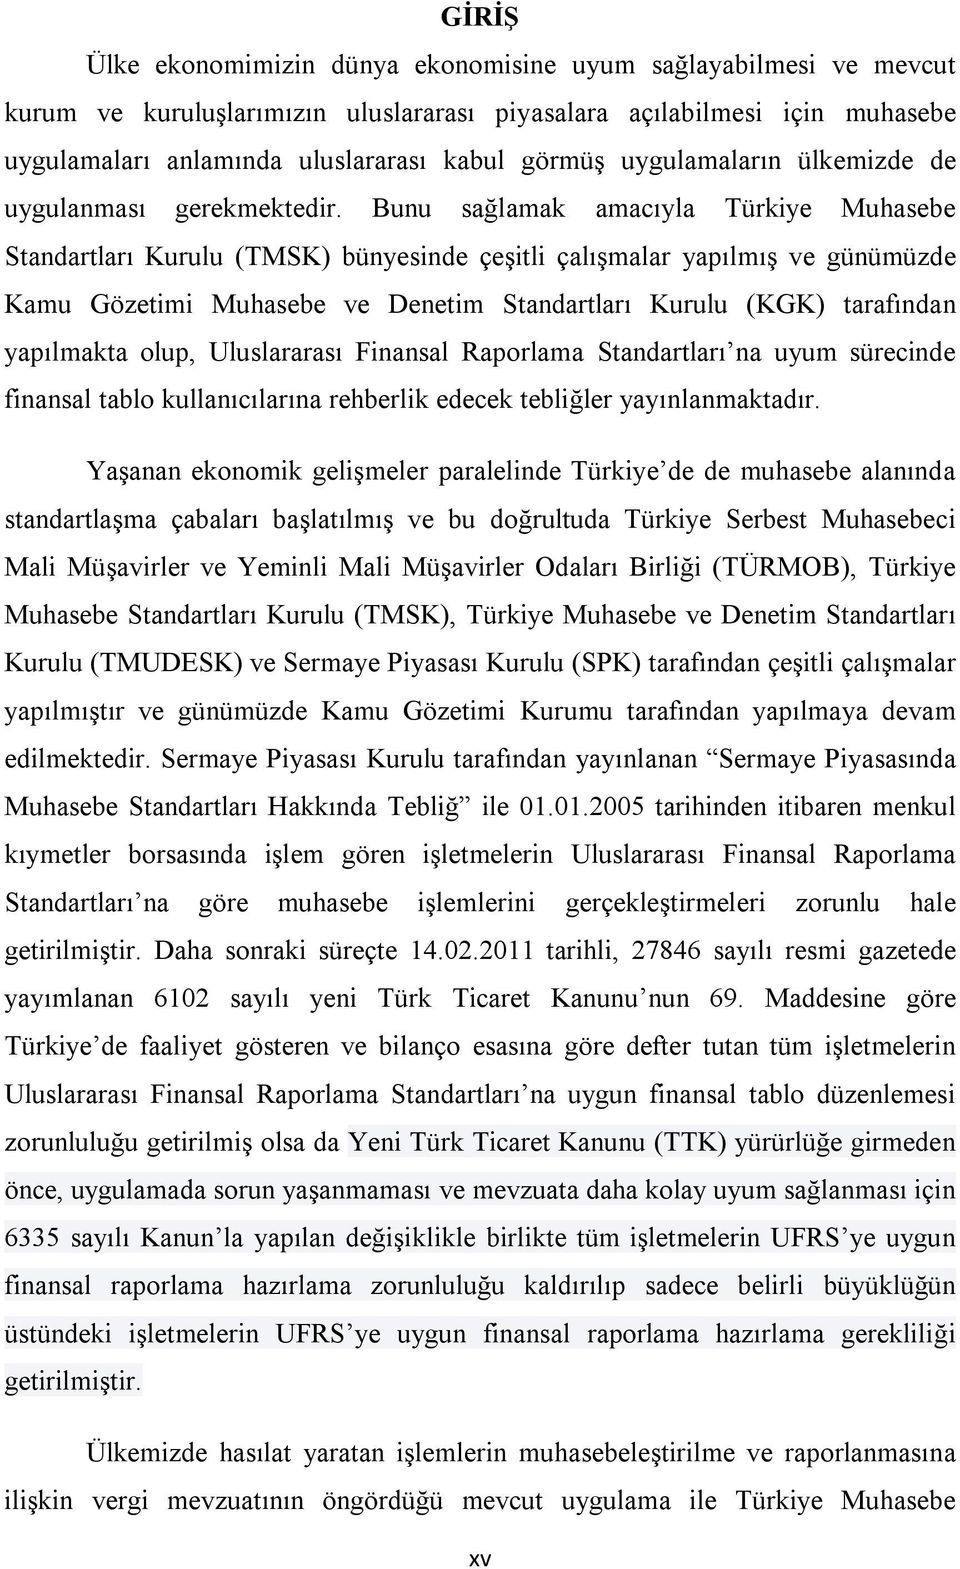 Bunu sağlamak amacıyla Türkiye Muhasebe Standartları Kurulu (TMSK) bünyesinde çeşitli çalışmalar yapılmış ve günümüzde Kamu Gözetimi Muhasebe ve Denetim Standartları Kurulu (KGK) tarafından